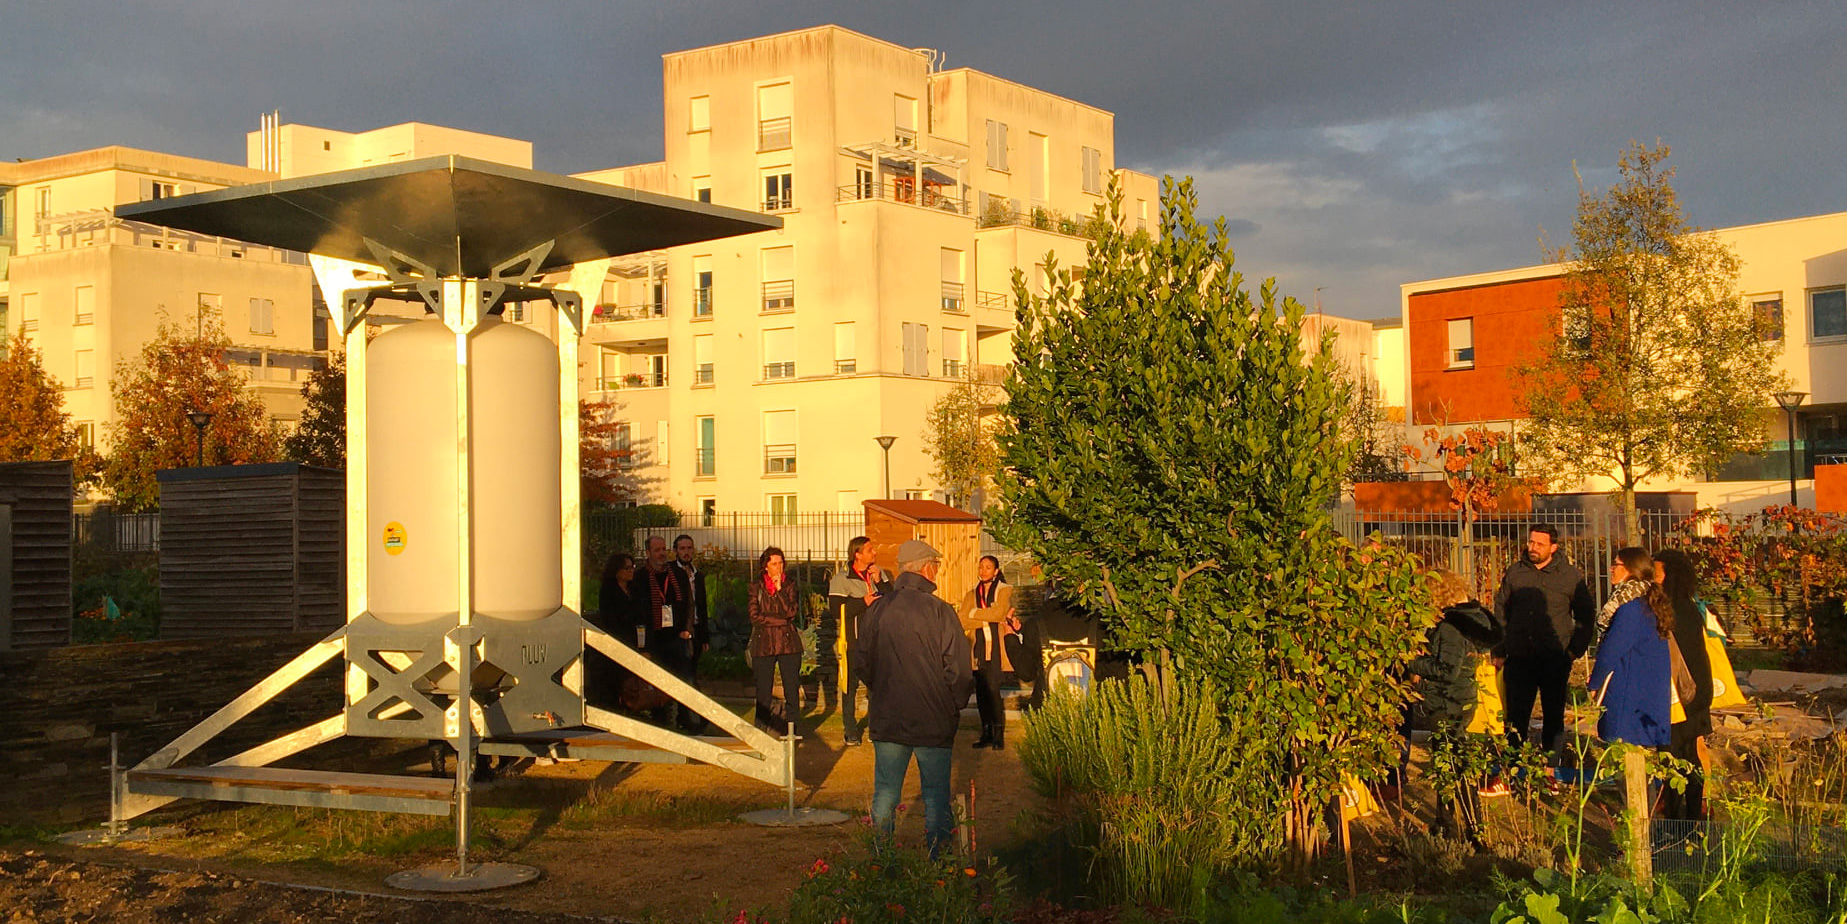 Présentation du fonctionnement de PLUV, collecteur-réservoir d'eau pluviale installé aux jardins partagés des Hauts de Saint Aubin à Angers, aux différents services techniques en charge des budgets participatifs en France